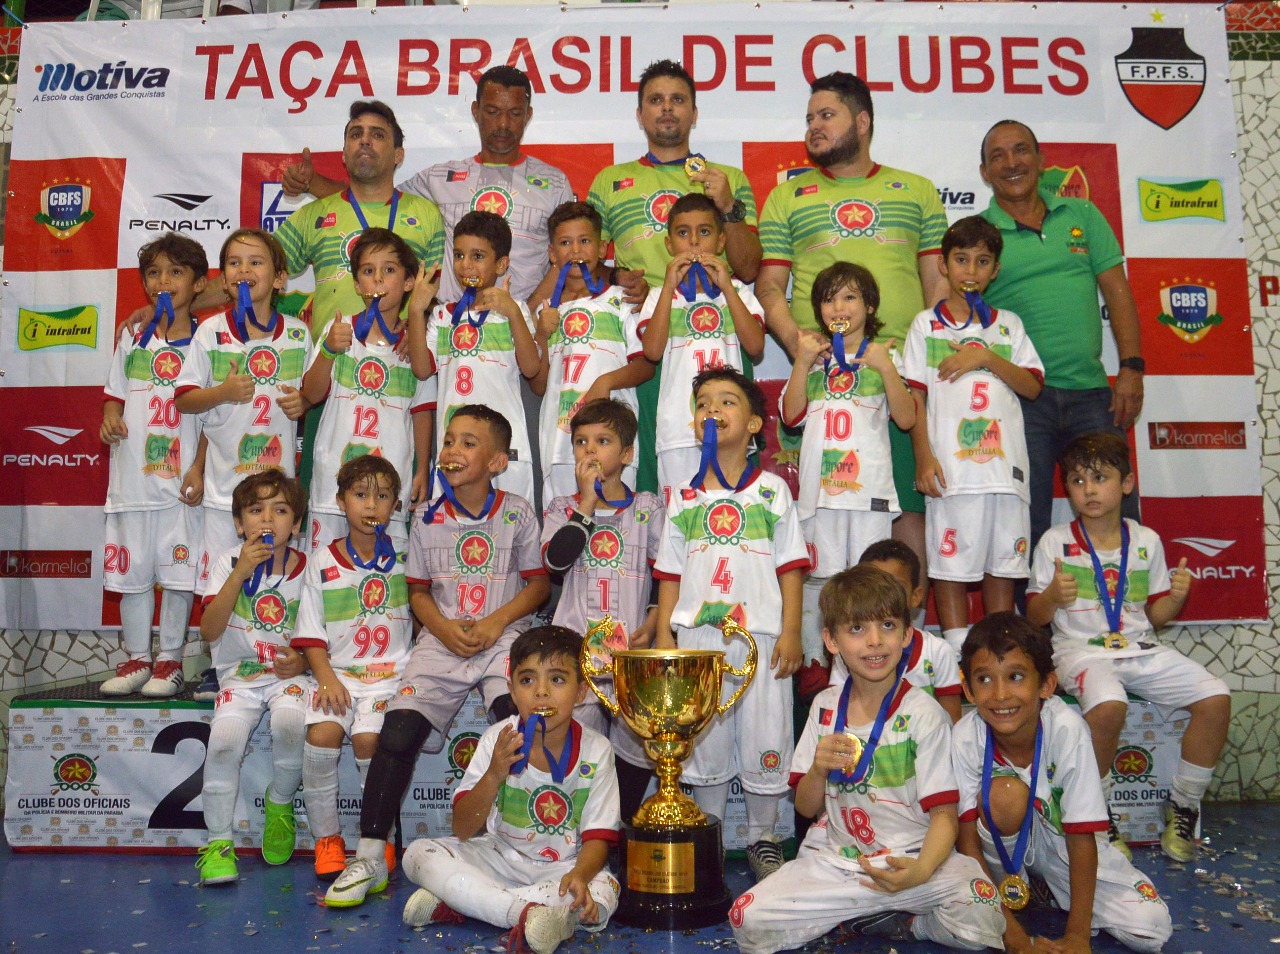 Clube dos Oficiais é campeão da Taça do Brasil de Futsal